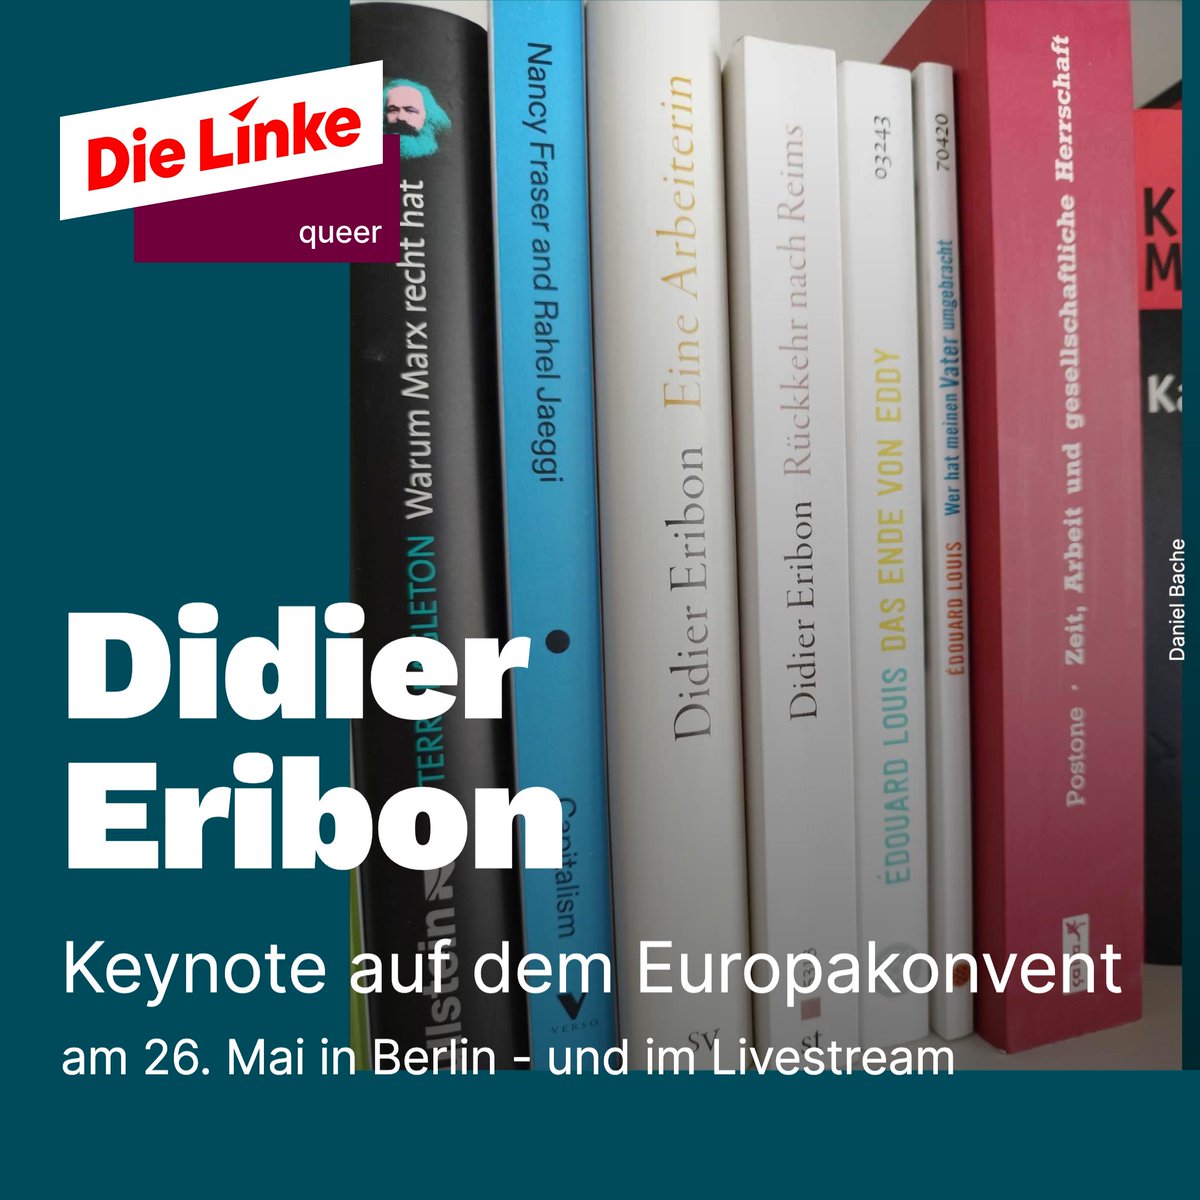 Didier Eribon, Autor u.a. von 'Rückkehr nach Reims', unterstützt unsere Partei @dieLinke im Wahlkampf. Er wird am 26. Mai auf dem Europakonvent der Partei in Berlin eine Keynote-Rede halten. Die Veranstaltung kann im Livestream verfolgt werden: die-linke.de/start/termine/…